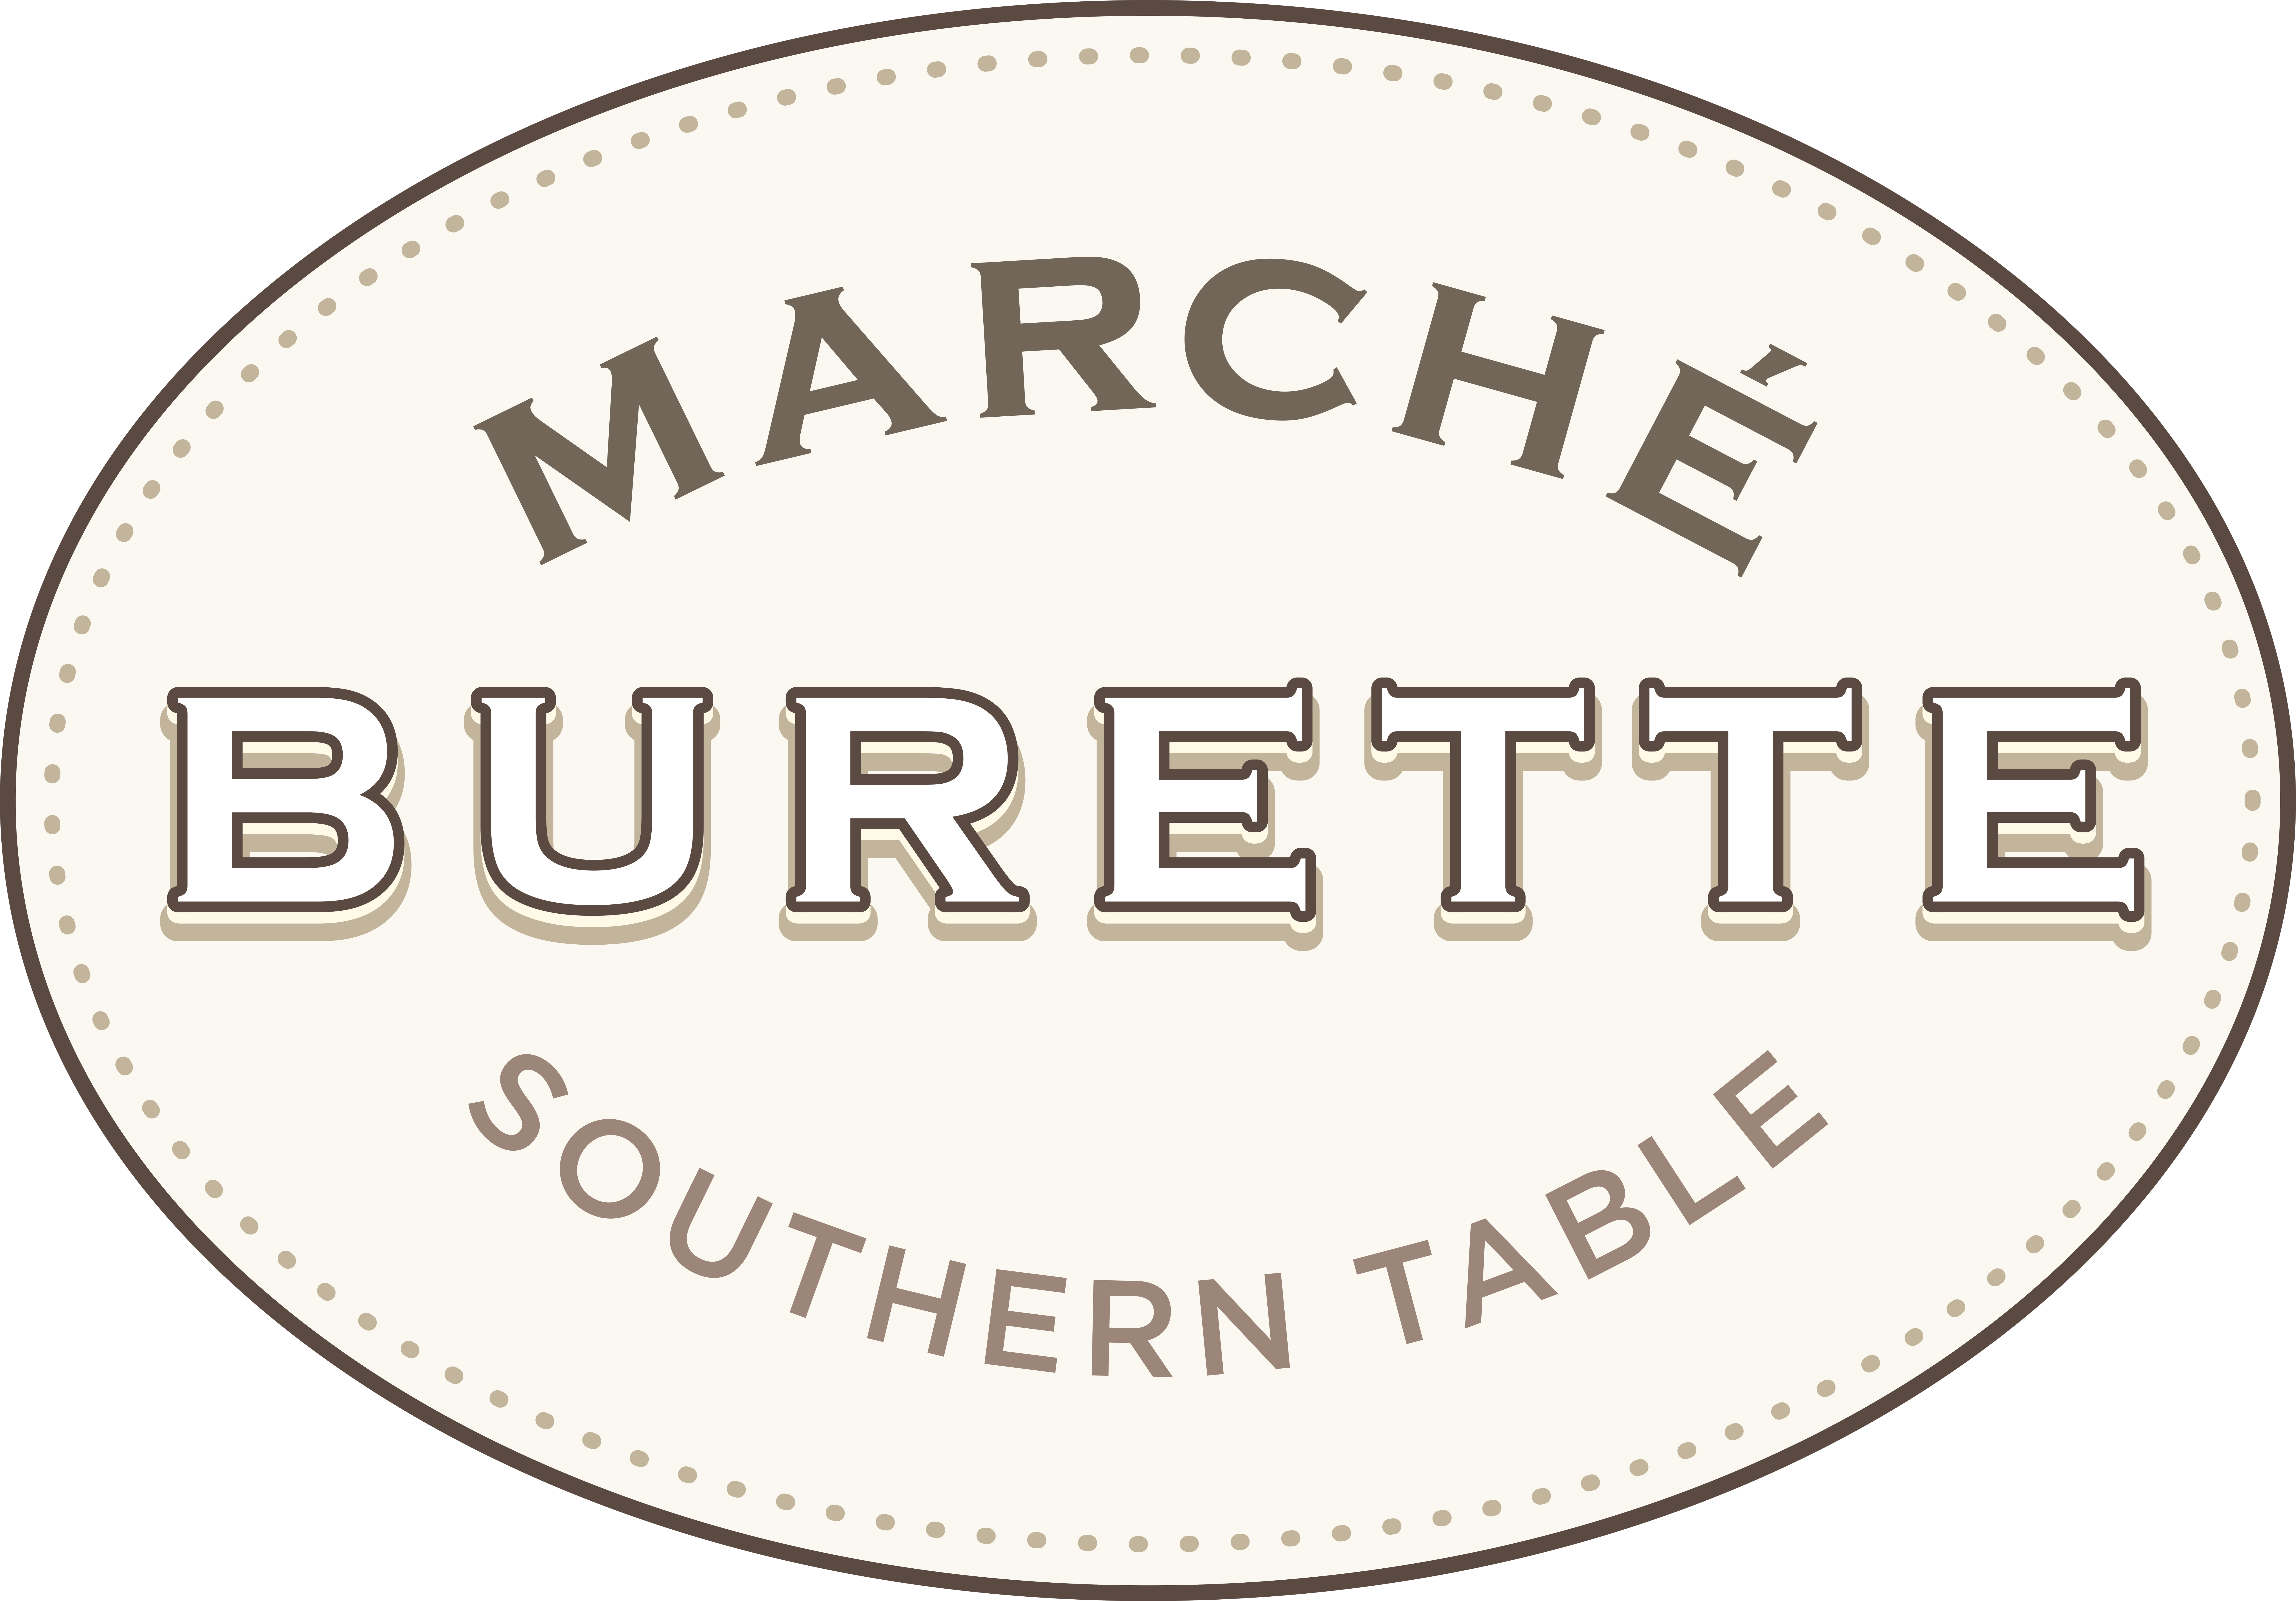 Marché Burette Southern Table